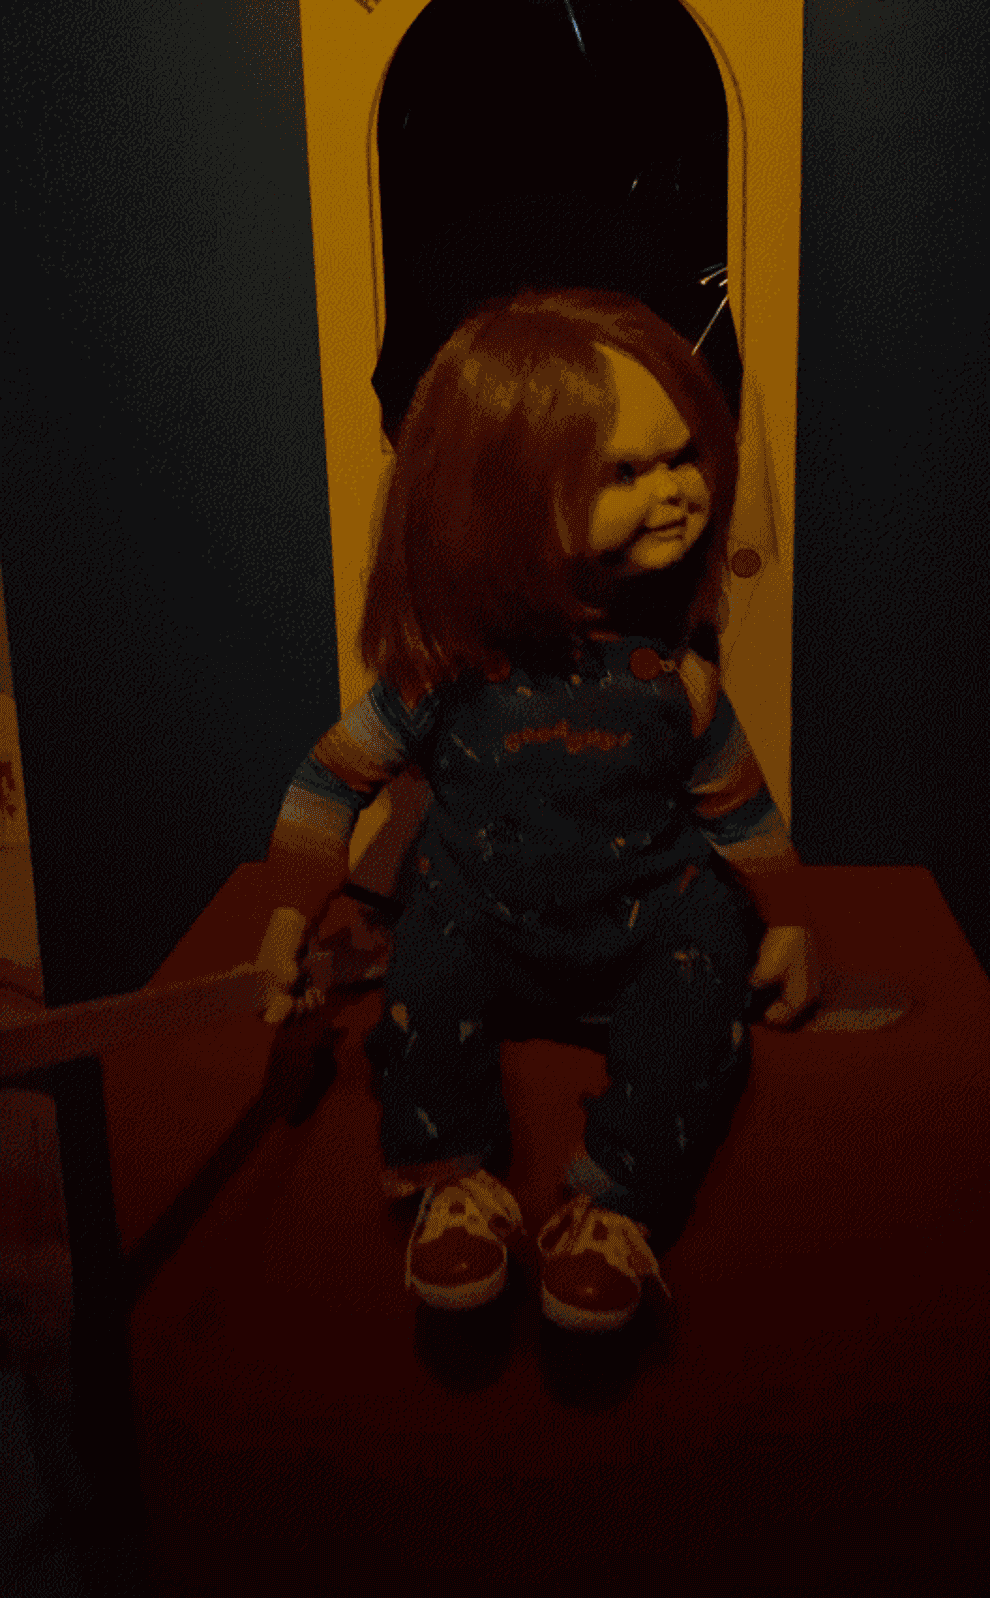 chucky doll